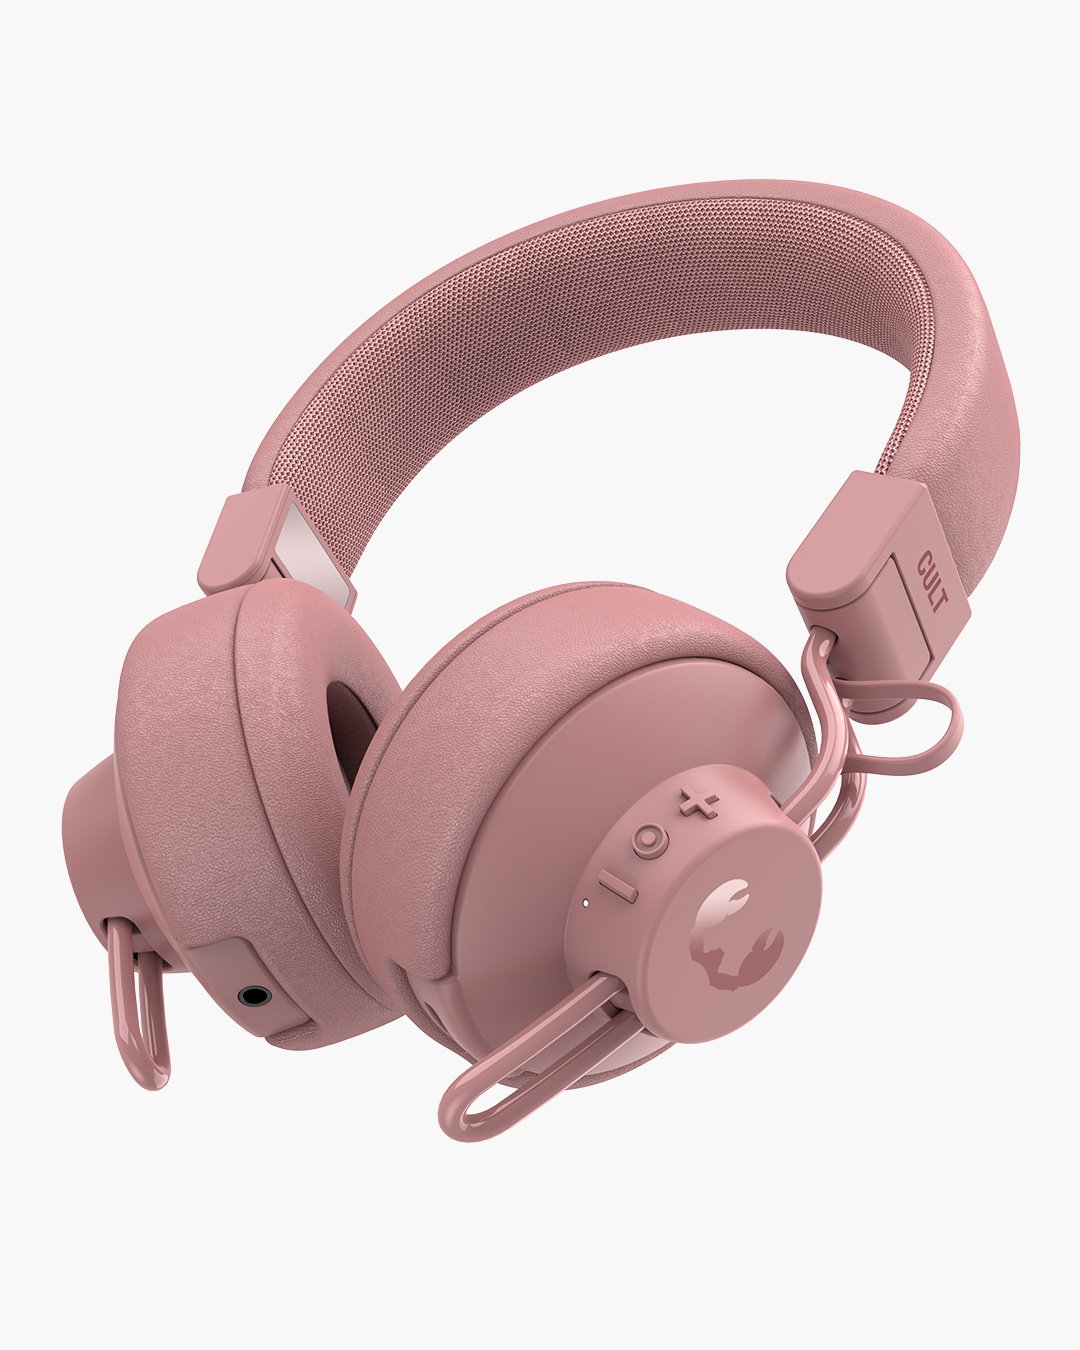 Fresh 'n Rebel - Cult - Wireless on-ear headphones - Dusty Pink